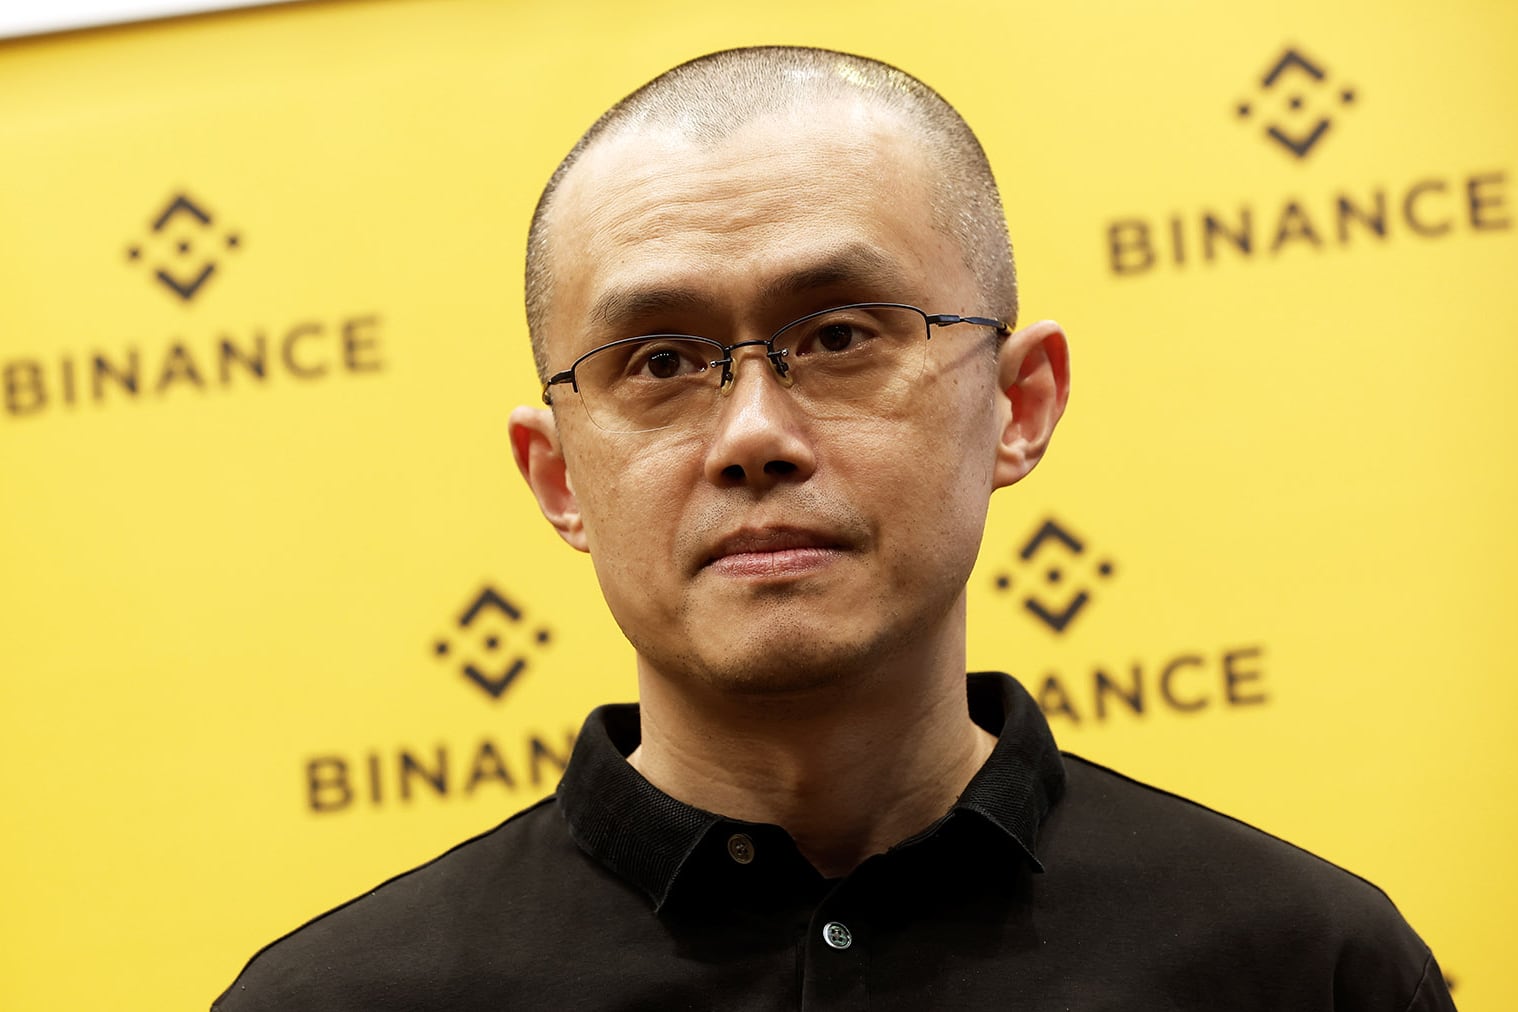 O fundador da Binance, Changpeng Zhao, concorda em renunciar e se declarar culpado de acusações de lavagem de dinheiro